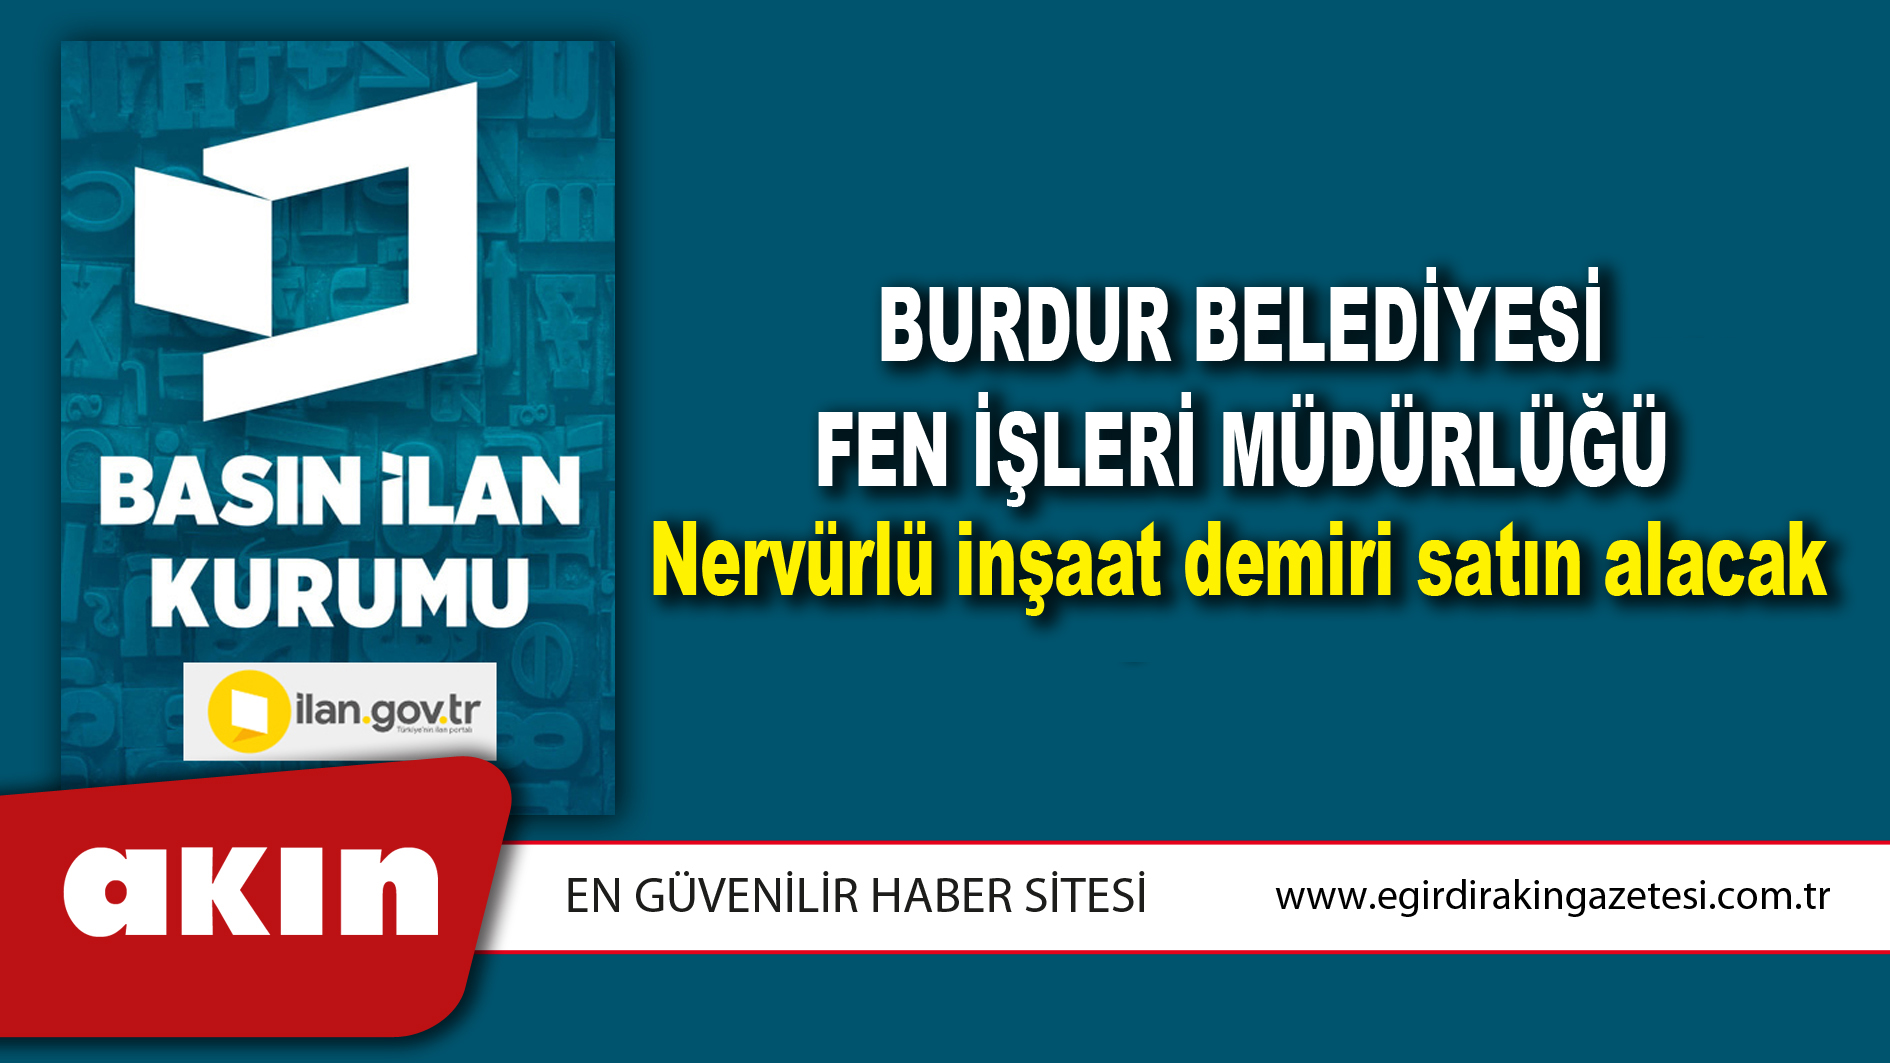 Burdur Belediyesi Fen İşleri Müdürlüğü Nervürlü inşaat demiri satın alacak